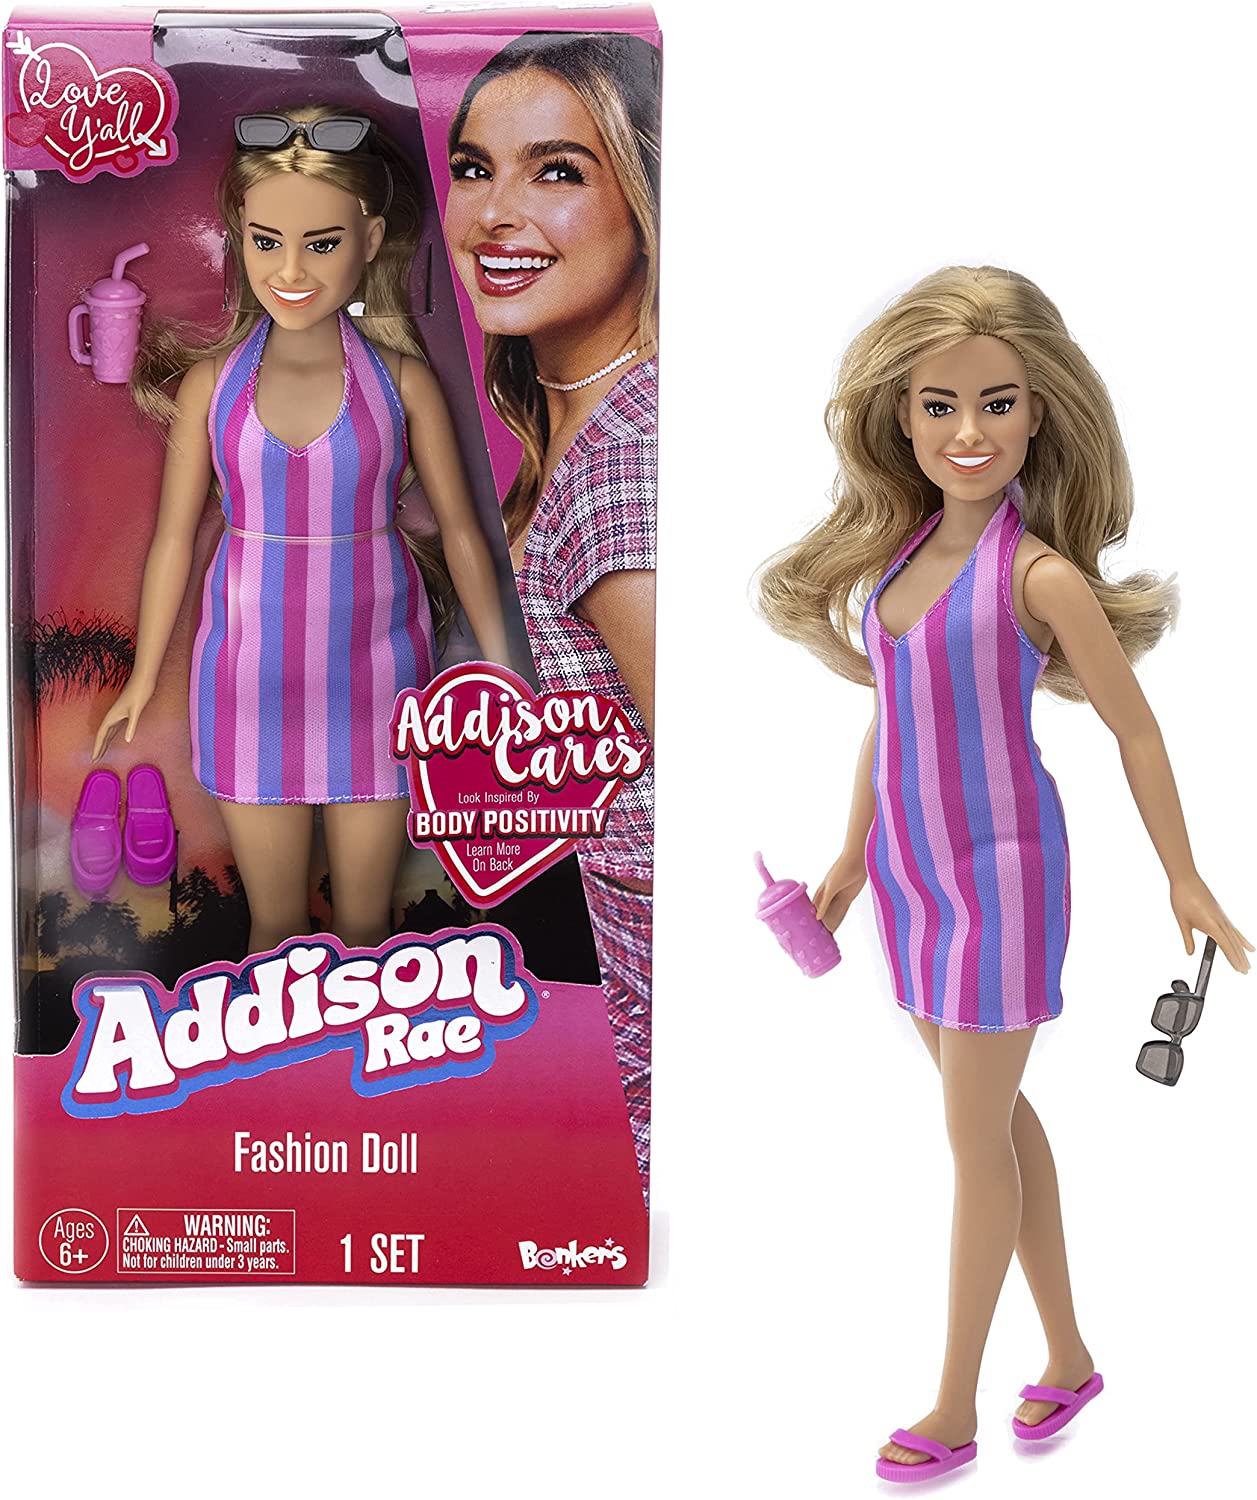 Addison Rae fashion dolls - YouLoveIt.com